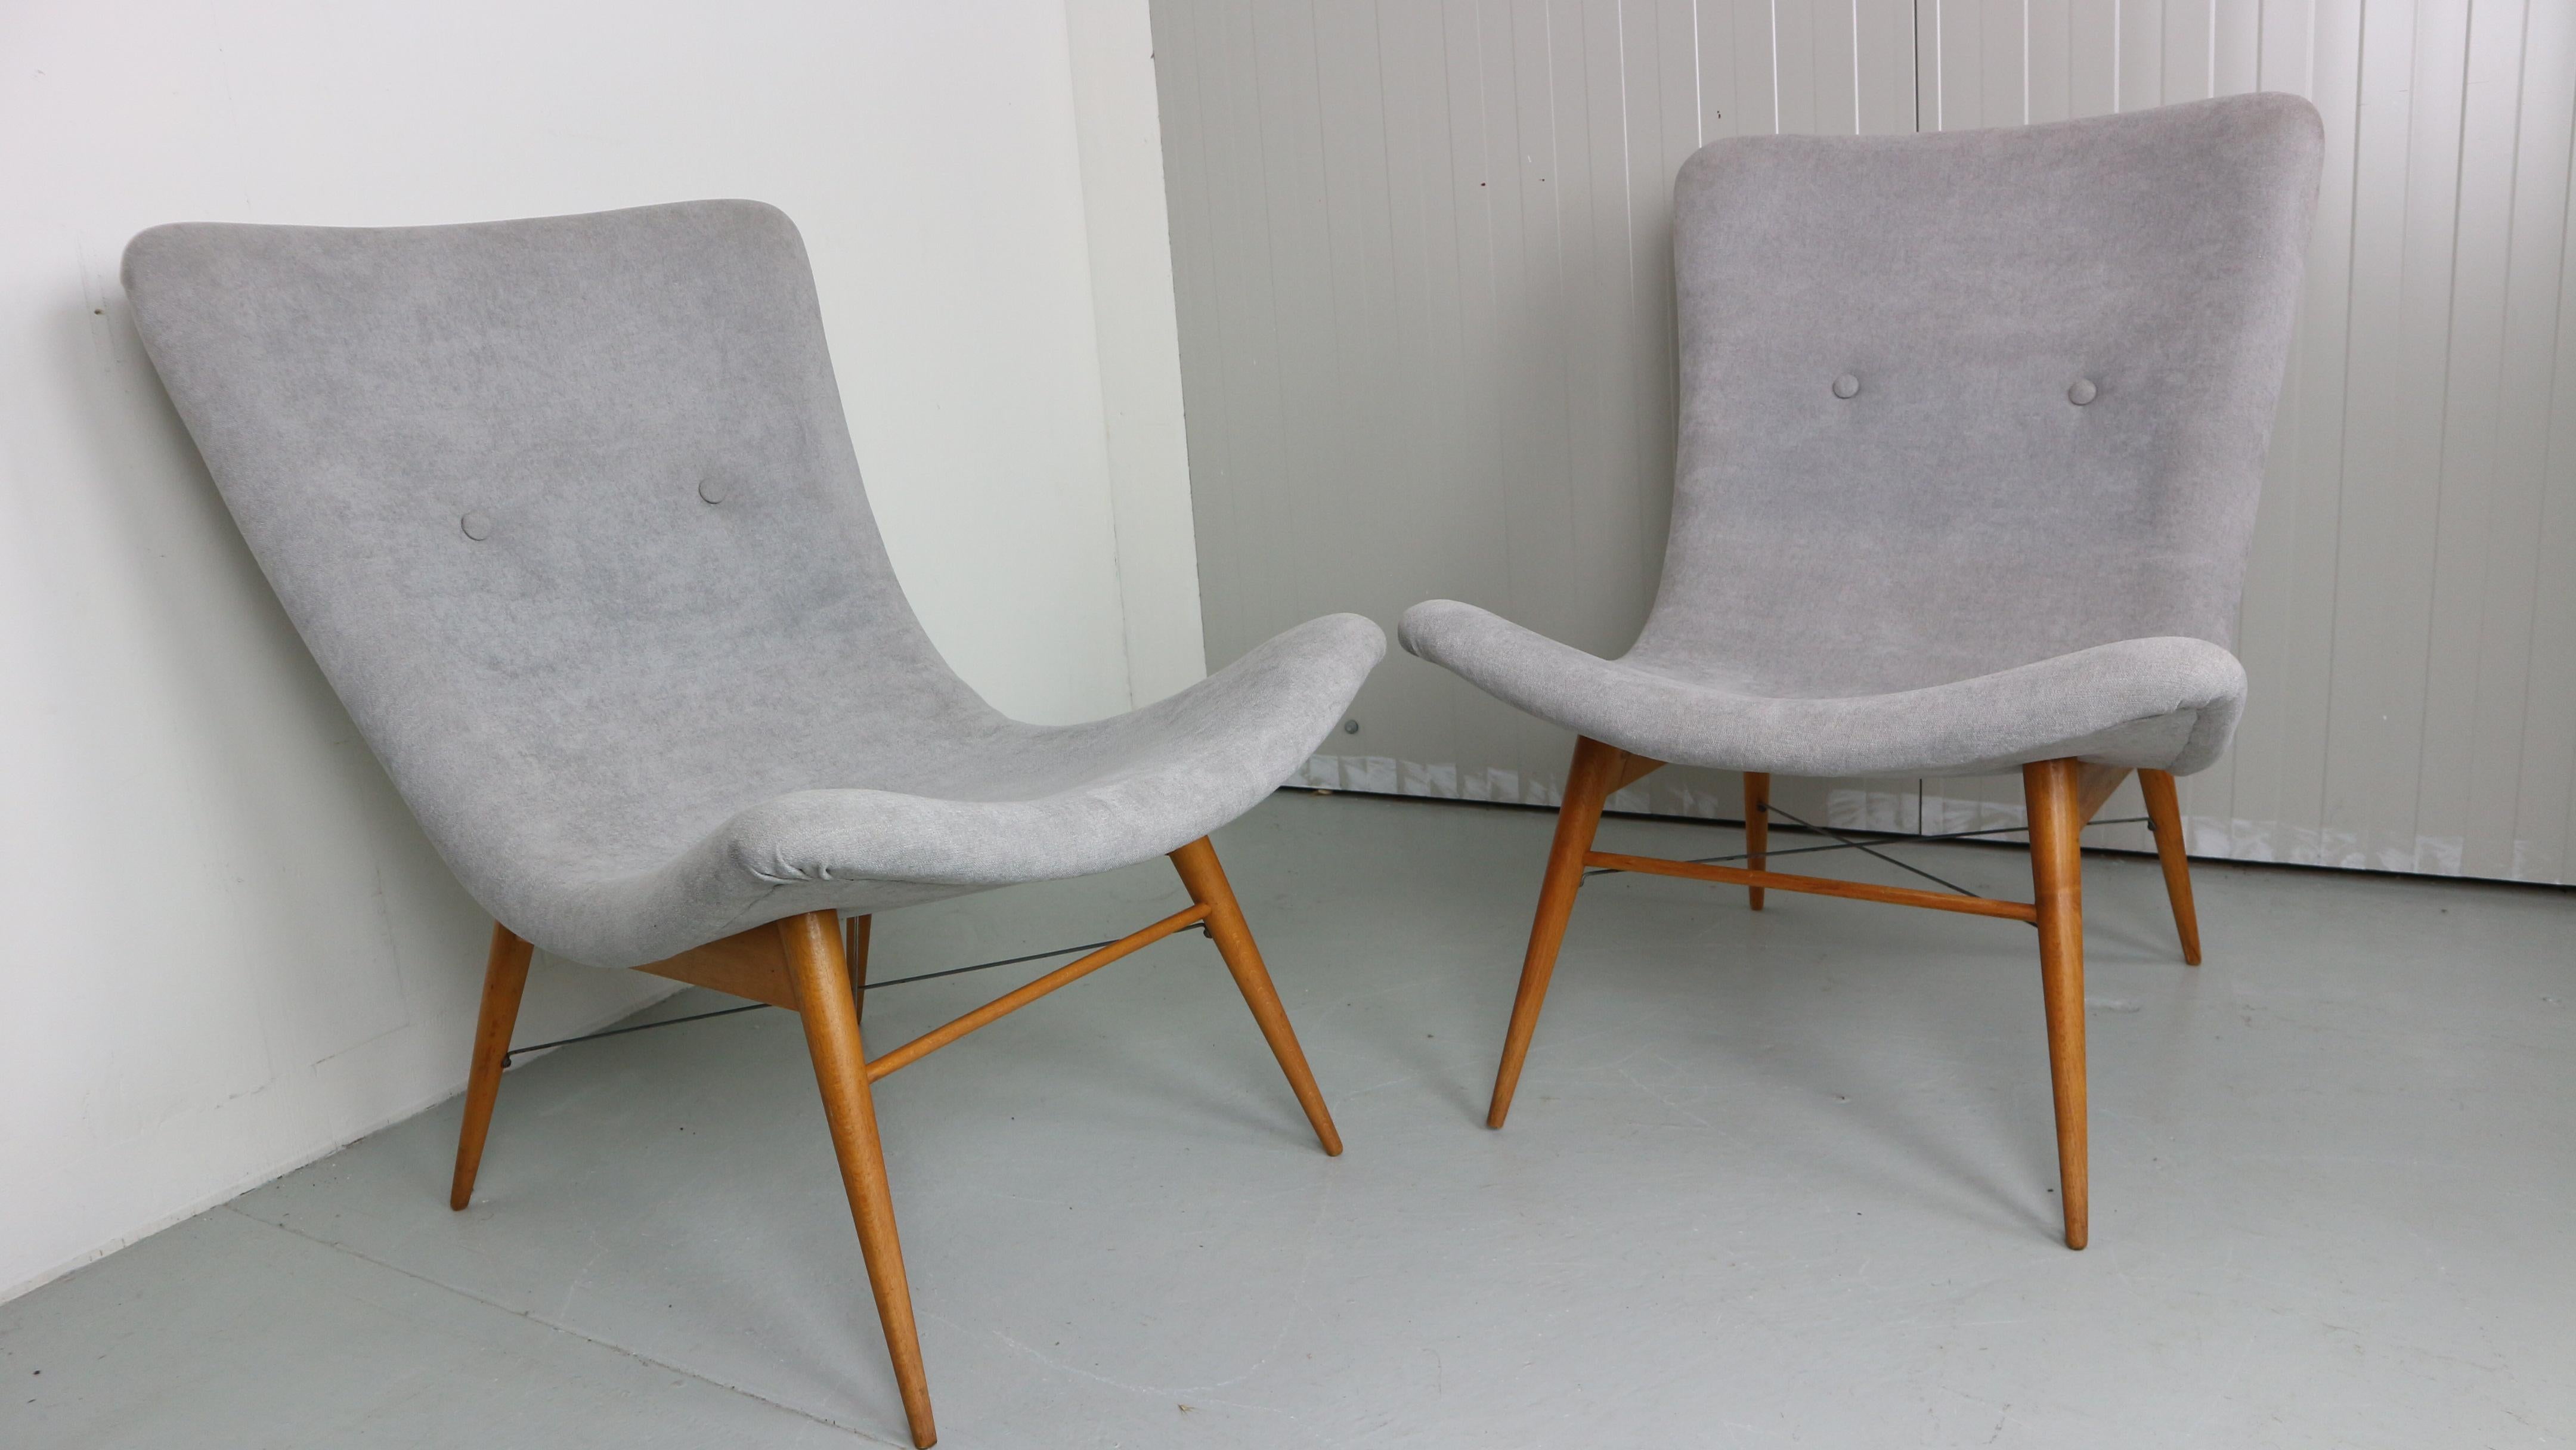 Satz von zwei Sesseln von Miroslav Navratil, hergestellt in der ehemaligen Tschechoslowakei von Cesky Nabytek, 1959er Jahre.
Originaler Holzsockel.
Beide Stühle wurden neu mit hellgrauem Stoff bezogen. 